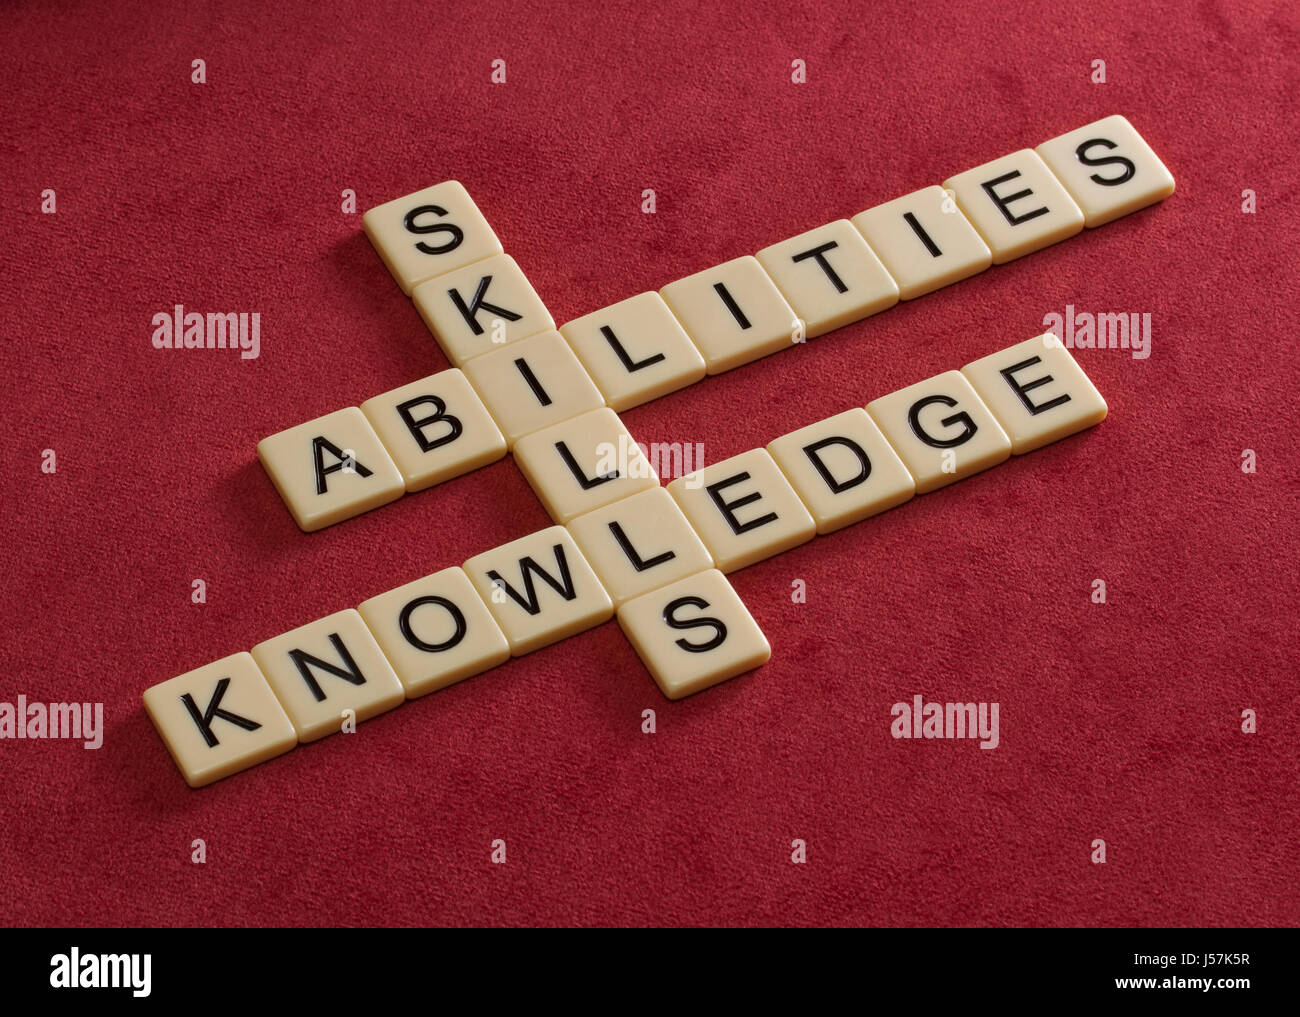 Kreuzworträtsel mit Worten Fertigkeiten, Fähigkeiten, wissen. Learning-Konzepts. Elfenbein Fliesen mit großen Buchstaben auf rotem Velours. Stockfoto